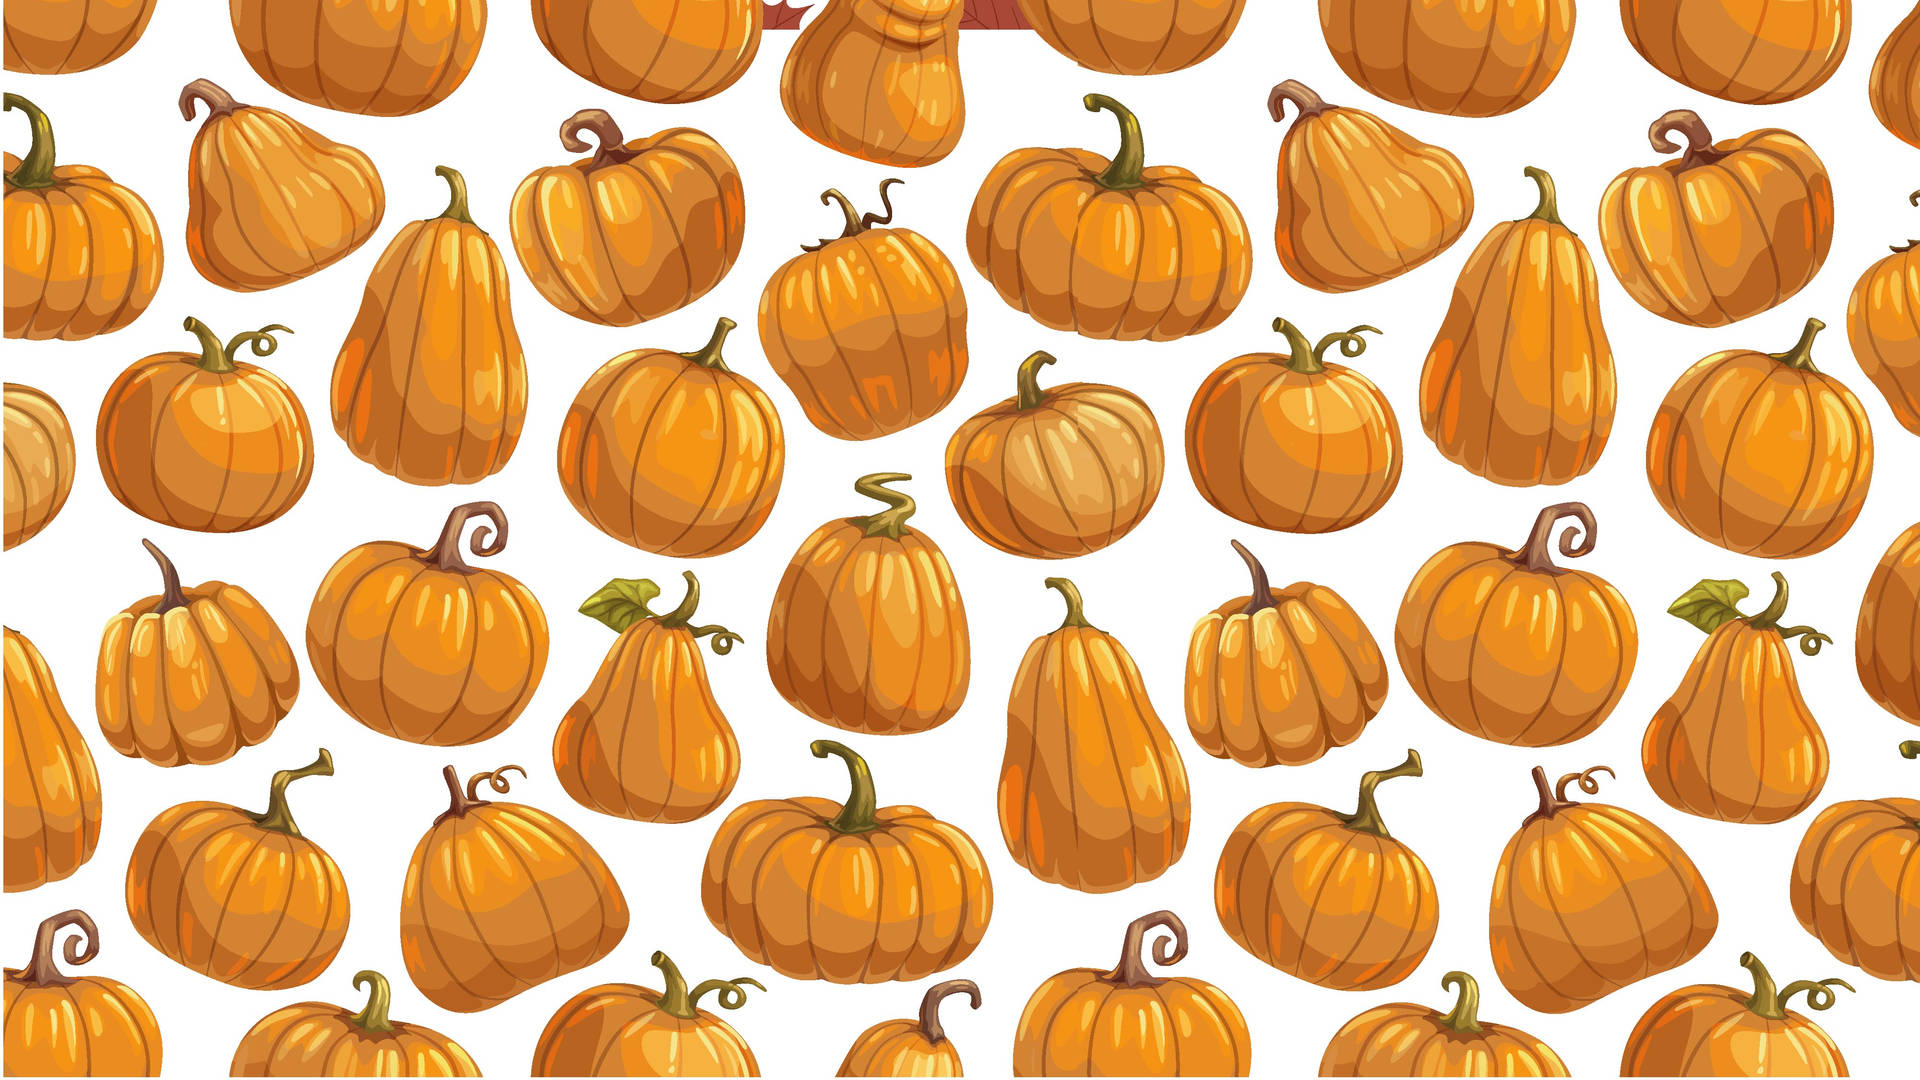 Pumpkins wallpaper  Variety of pumpkins  Idea Wallpapers  iPhone  WallpapersColor Schemes